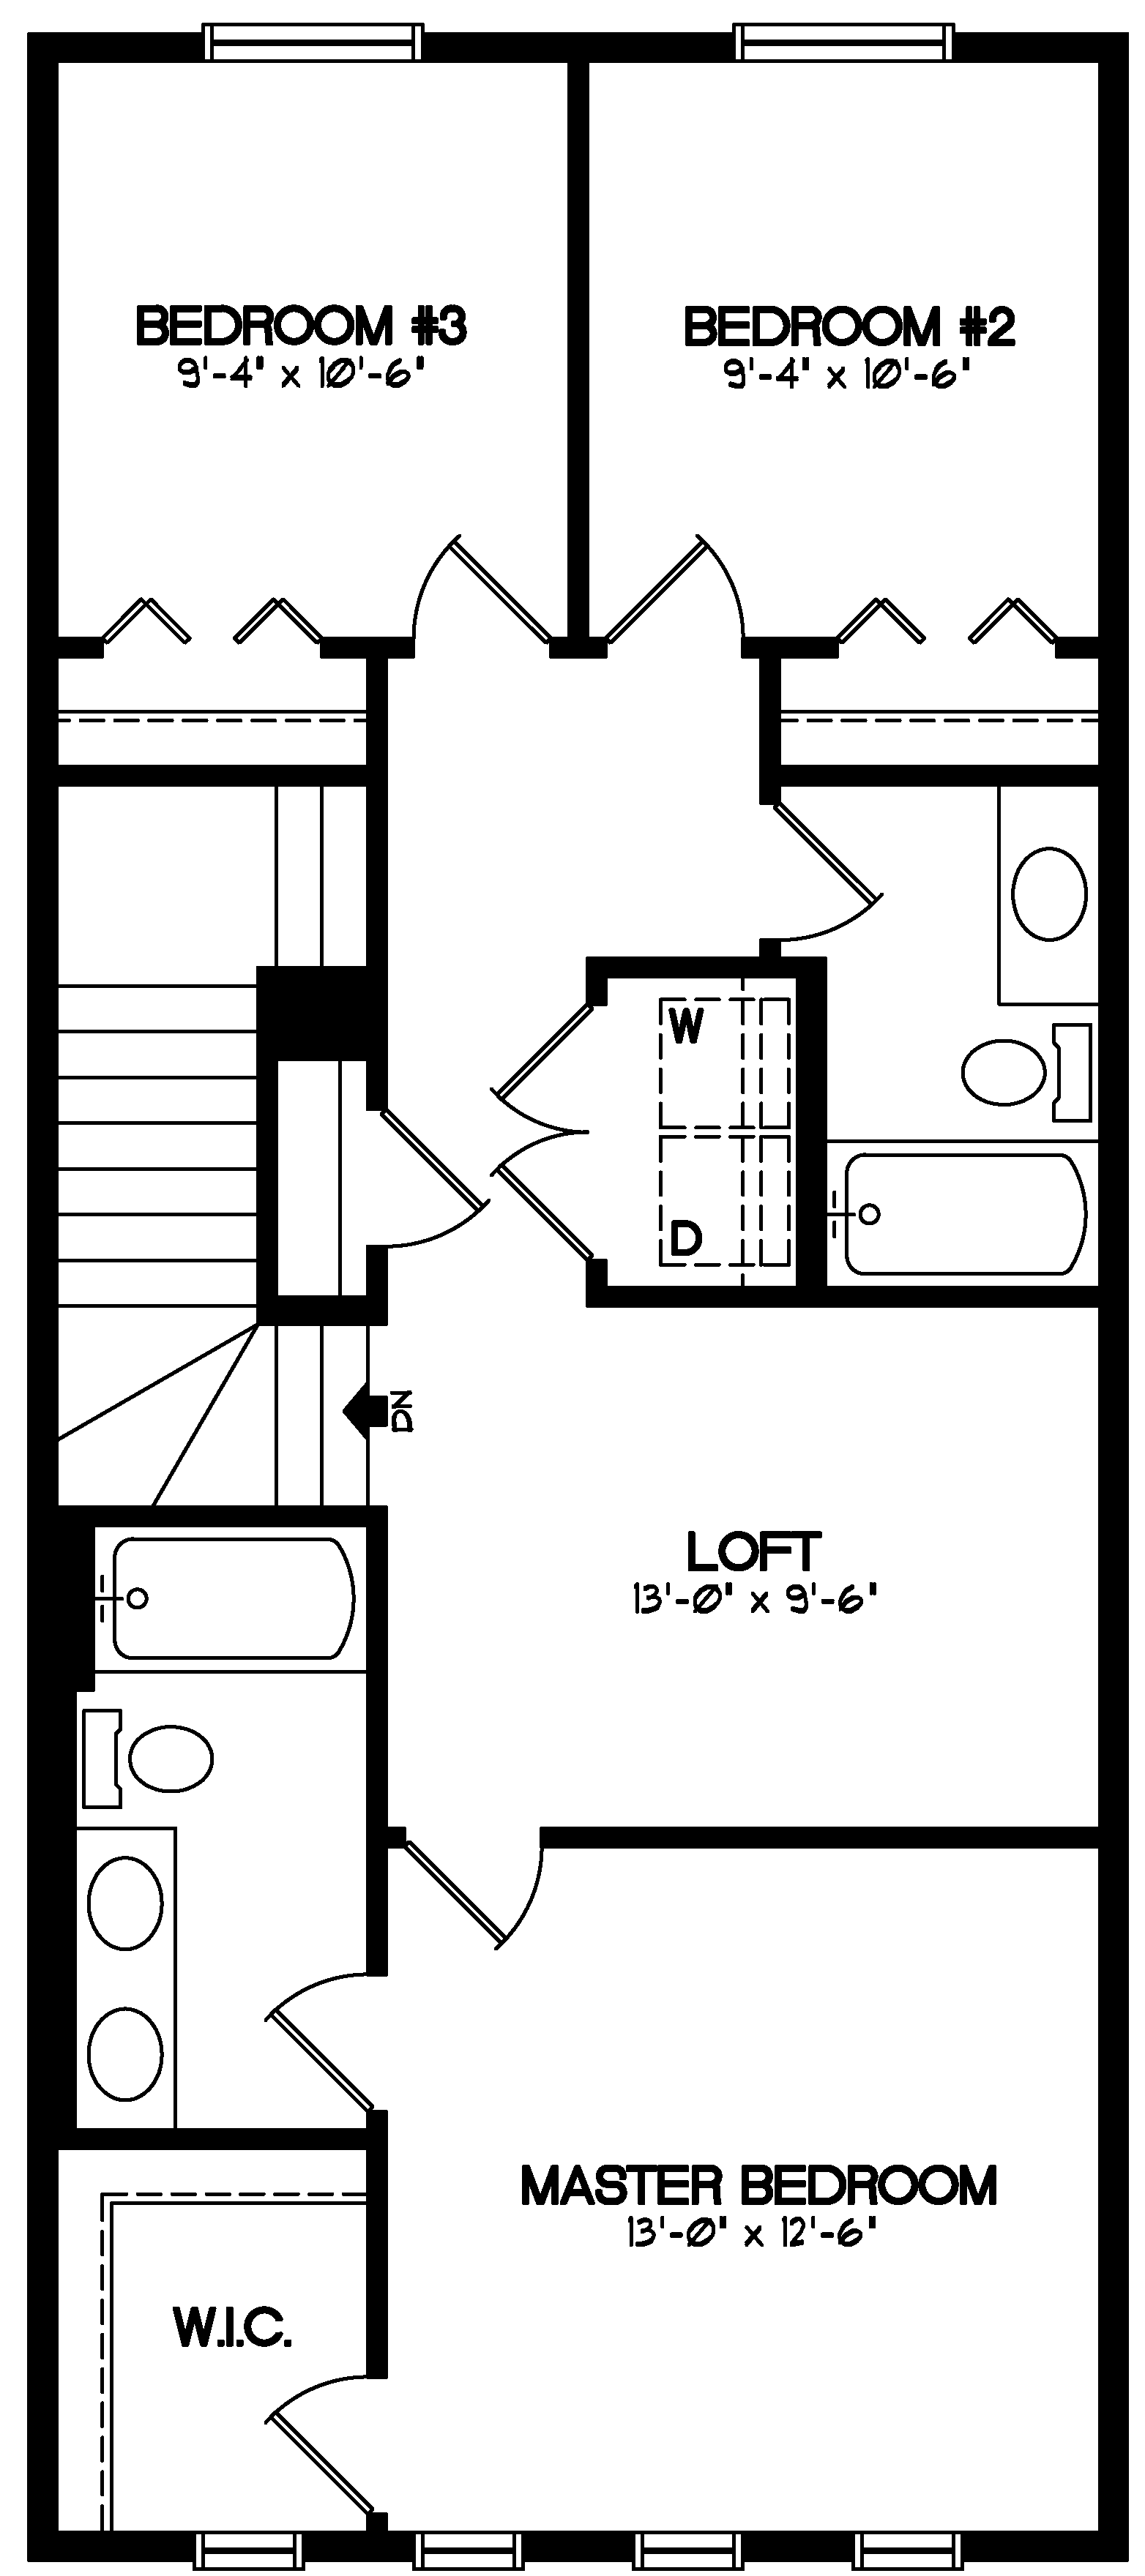 Newport III Home Model Floor Plans